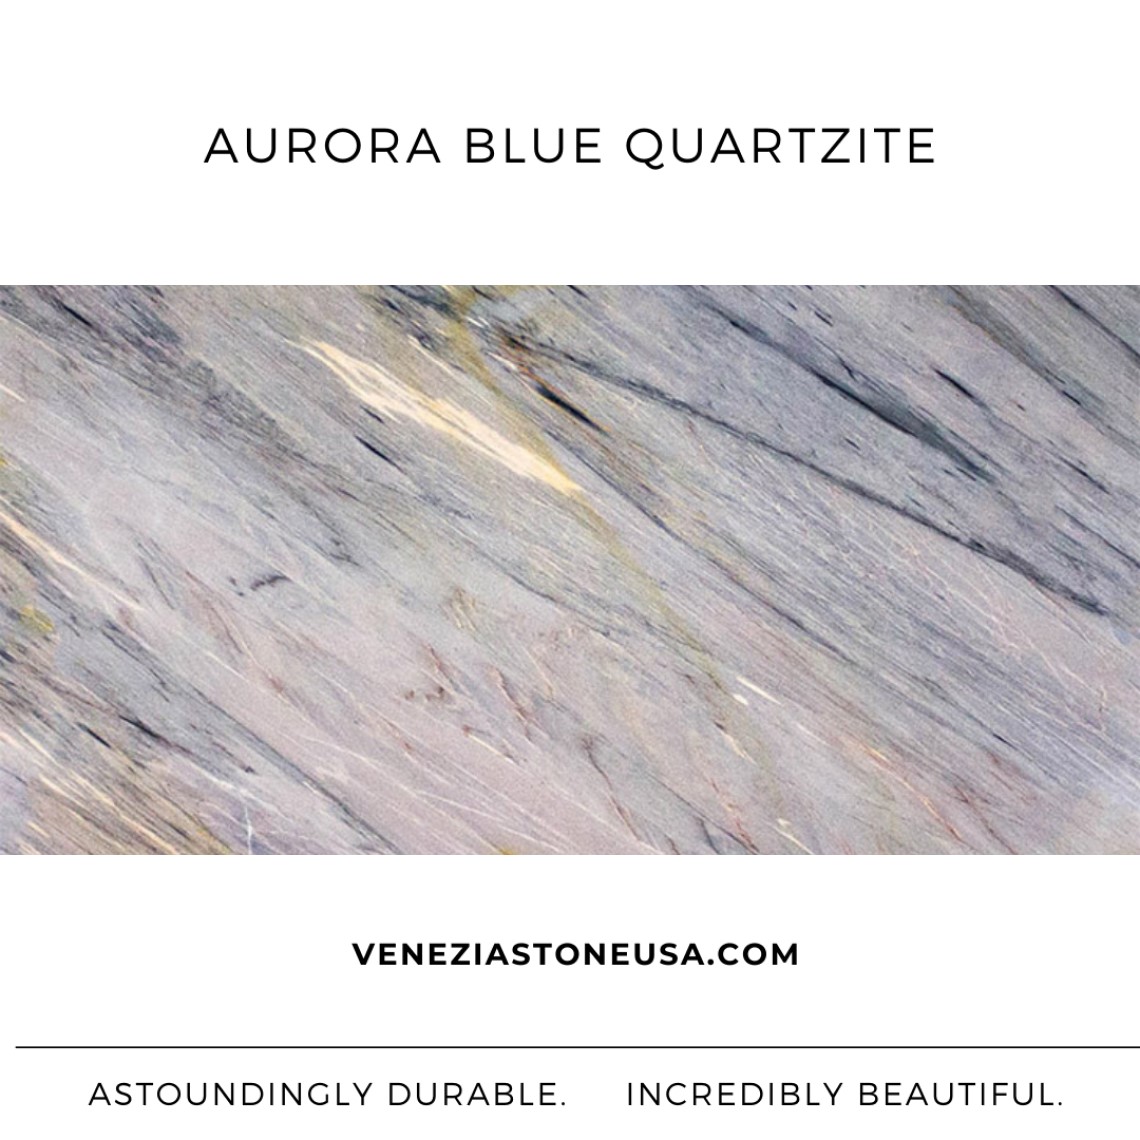 Quartzite Aurora Blue! Stunning & Magnificent 